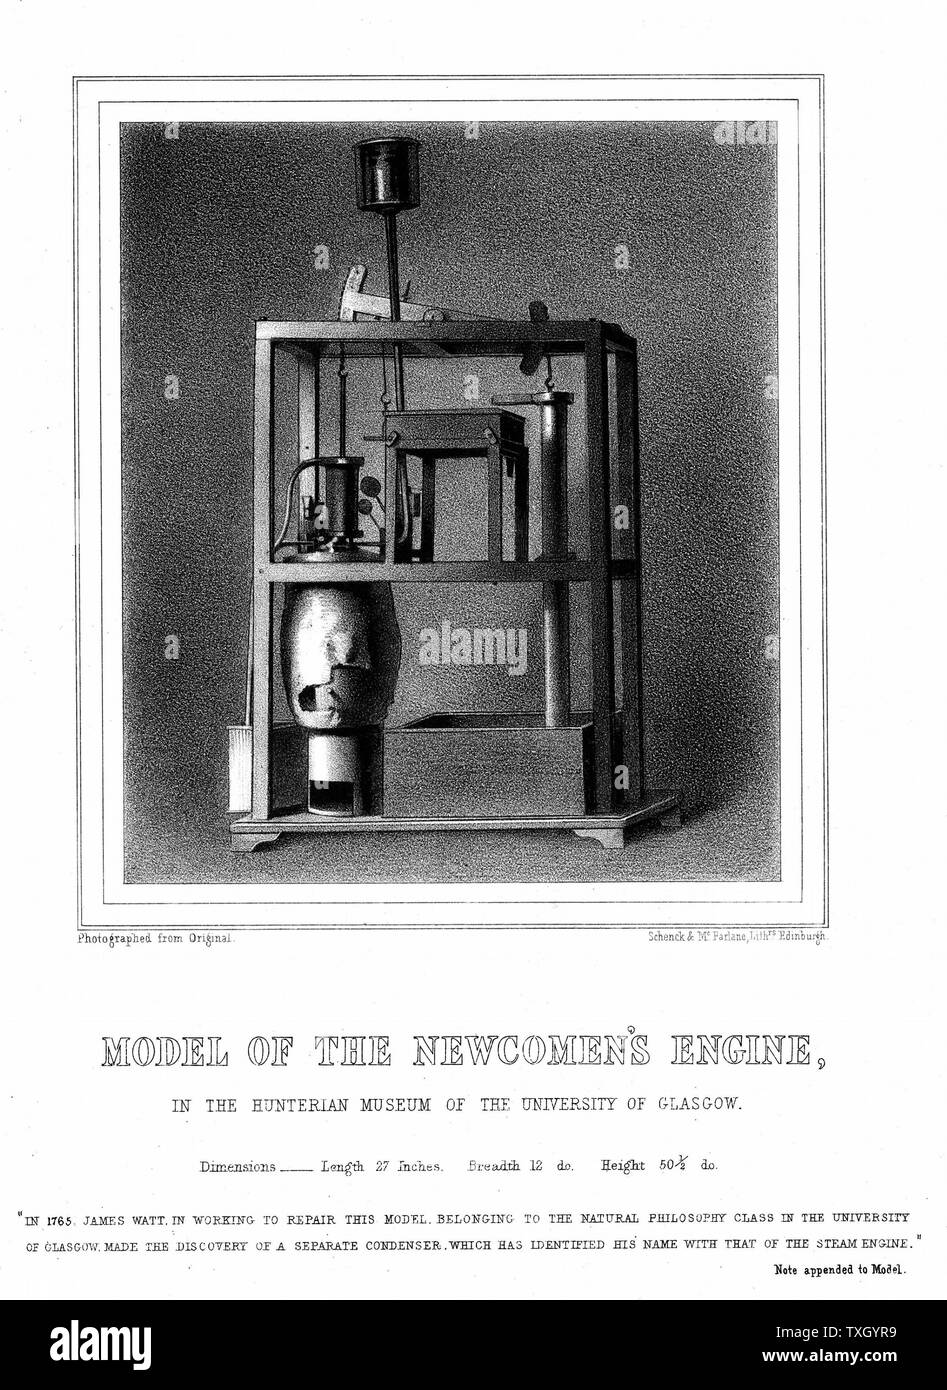 Modell der Newcomen Dampfmaschine. Es war während der Reparatur dieser Motor, Watt gesagt ist der separaten Kondensator erfunden zu haben. Von George Williamson 'Memorials von James Watt' 1856. Lithographie Stockfoto